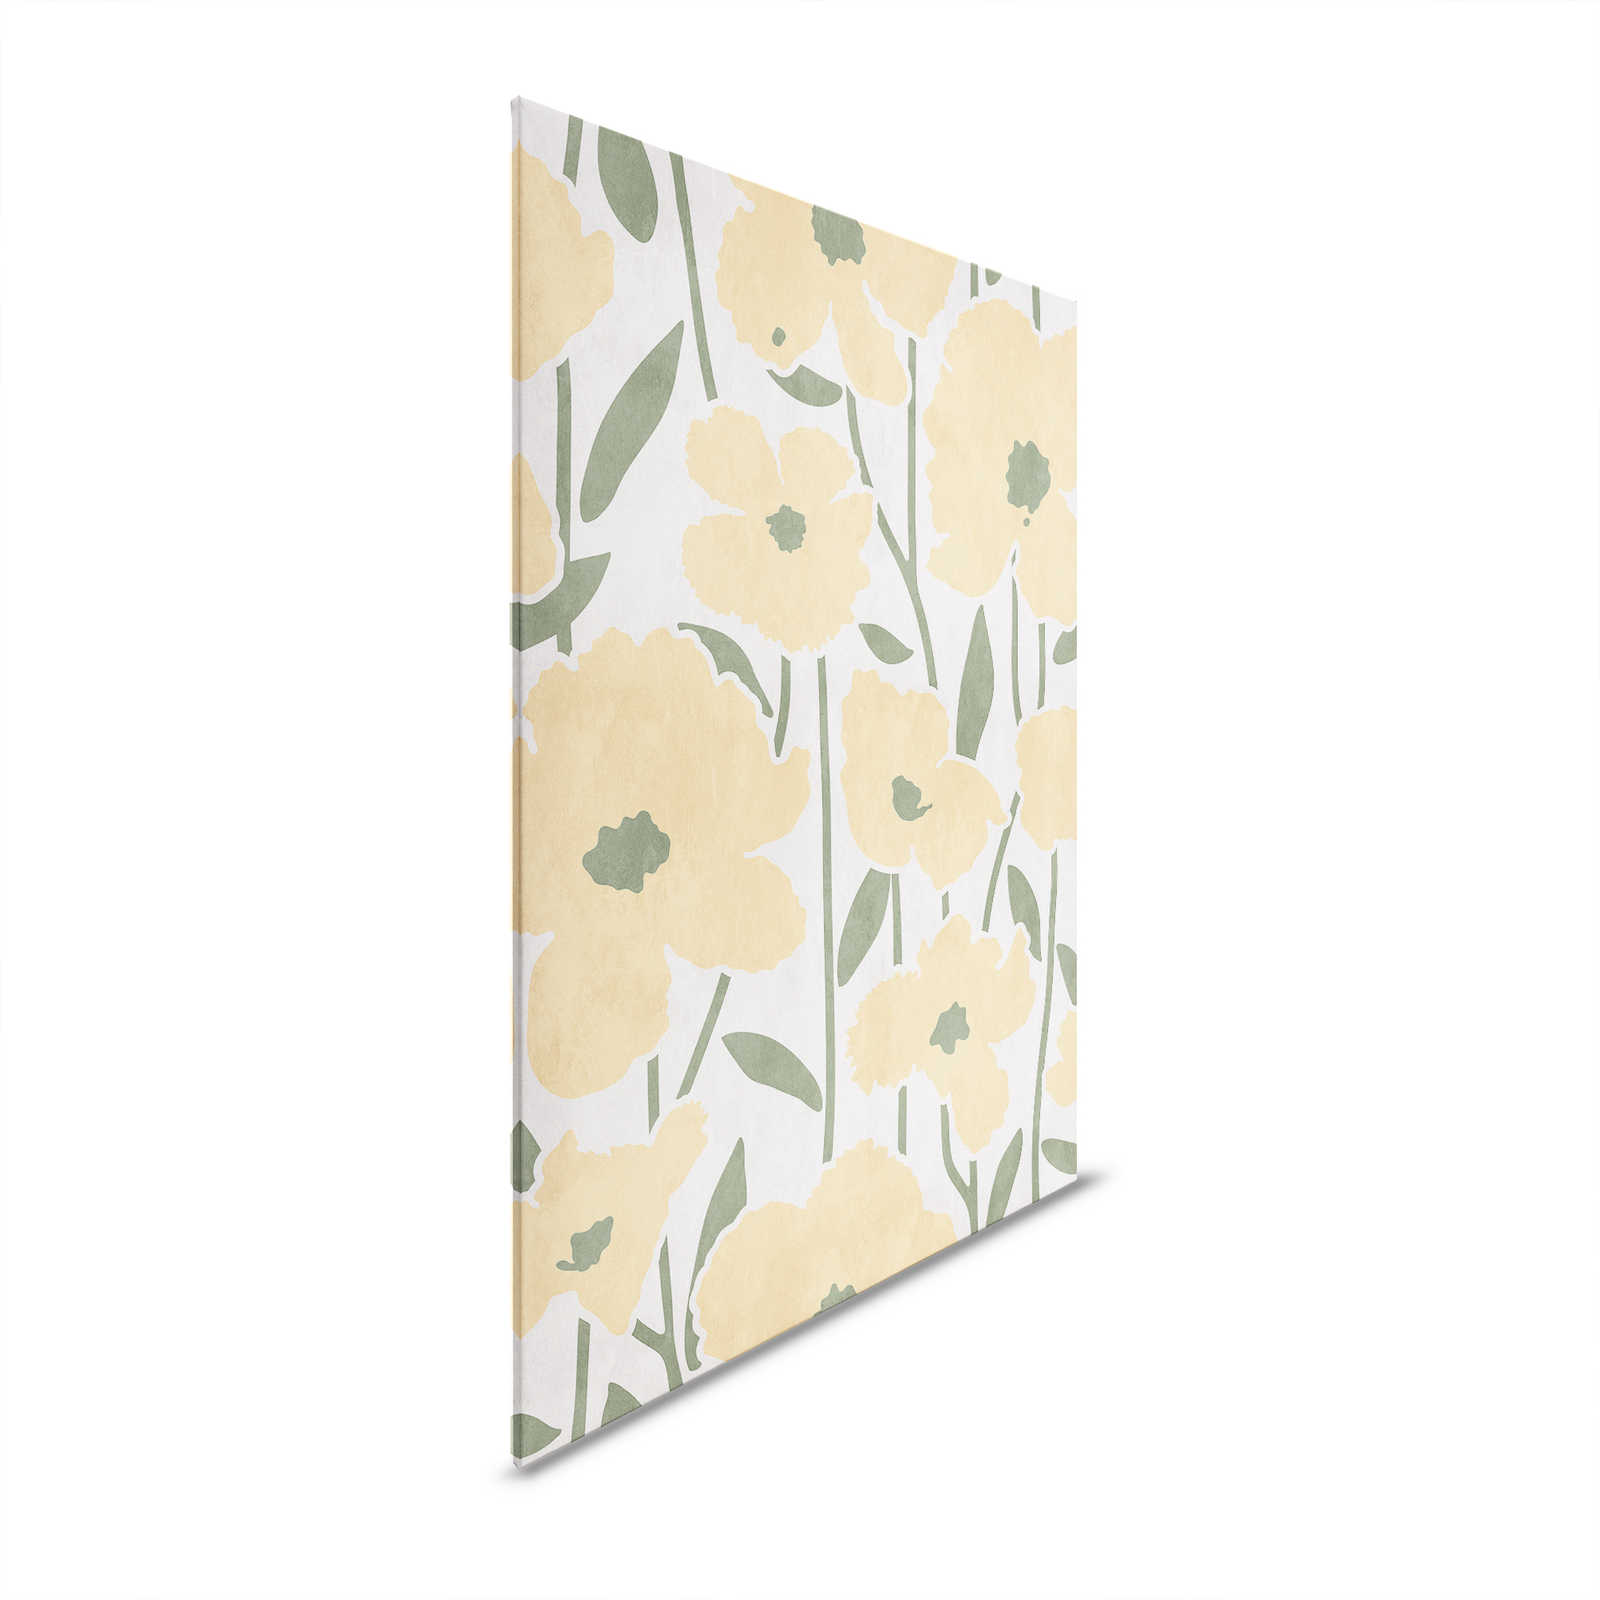 Mercato dei fiori 3 - Quadro su tela Fiori gialli Pattern & Rendering - 0,80 m x 1,20 m
